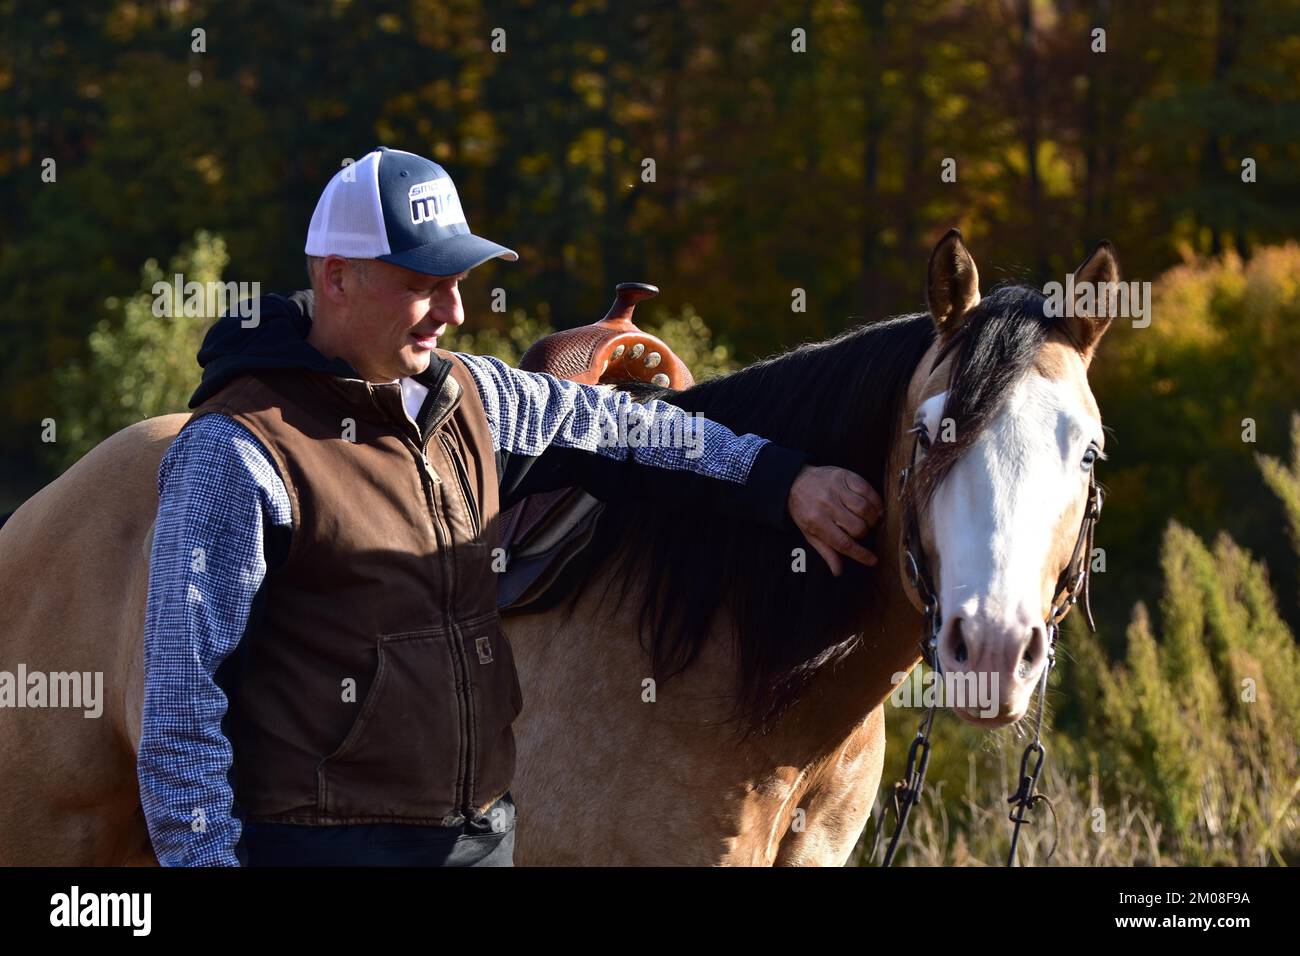 American Quarter Horse étalon dans l'entraînement pour l'équitation de l'Ouest, le contact et la relation par le contact et la louange entre le stalion et l'entraîneur, Rhinel Banque D'Images